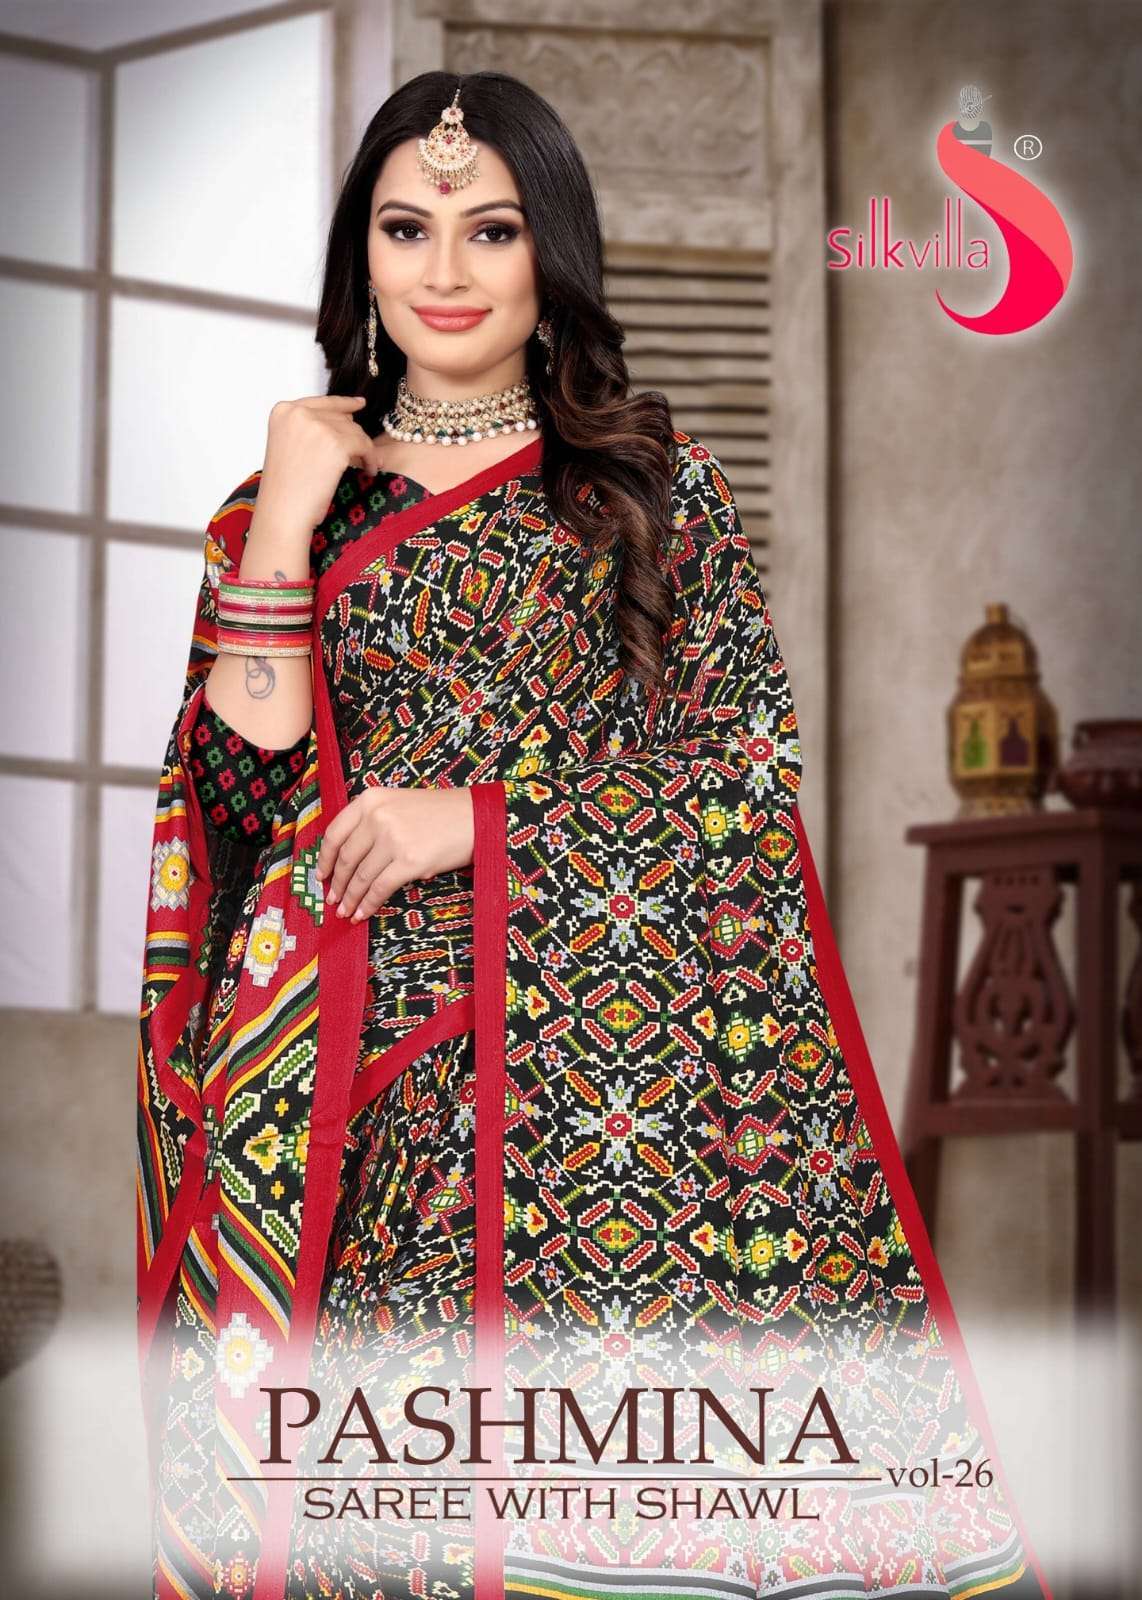 silkvilla pashmina saree with shawl vol 26 series 26001-26009 pashmina saree